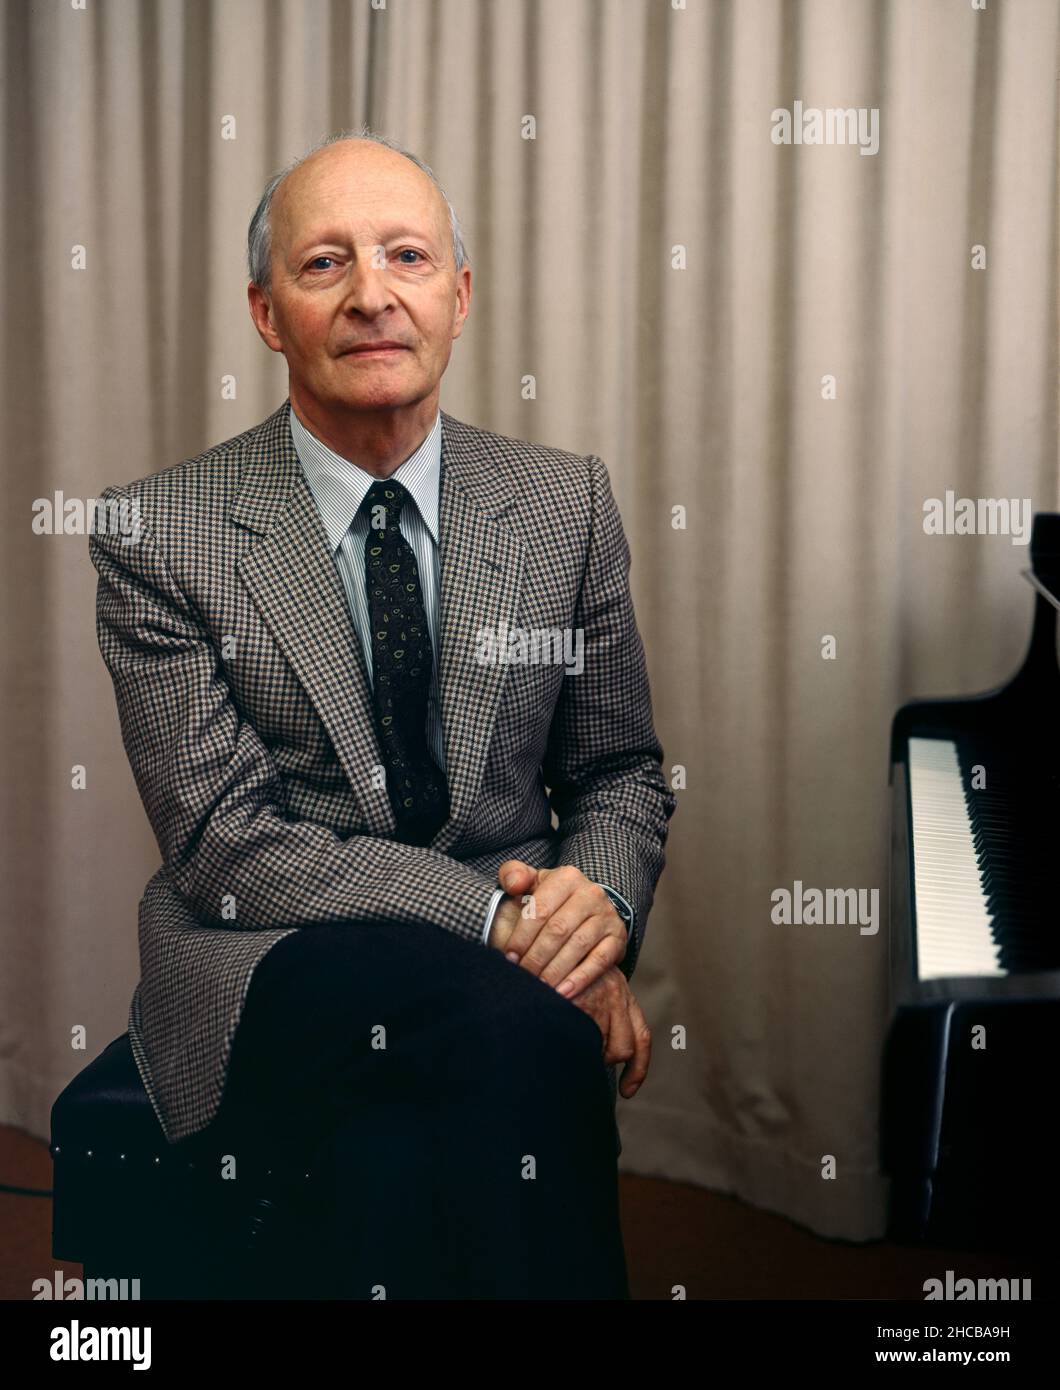 Il famoso compositore e direttore d'orchestra polacco Witold Lutoslawski nella sala concerti della radio svedese, Berwaldhallen. Stoccolma negli anni ottanta, Svezia. Foto Stock